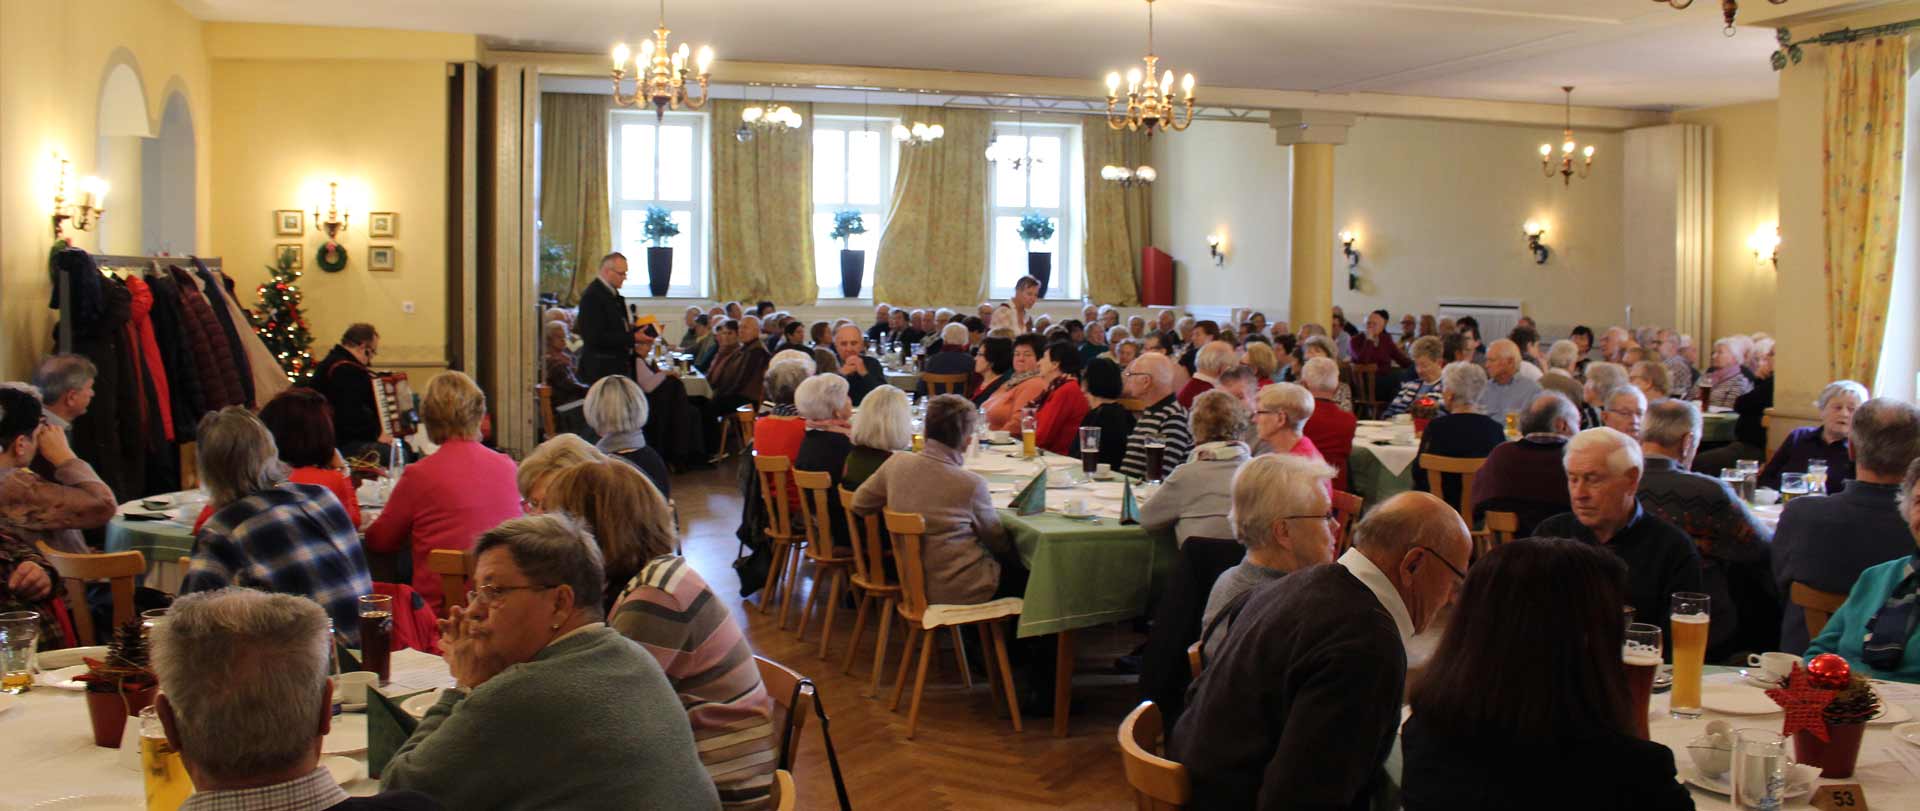 Der Saal im Jungbräu war voll. Die Adventsfeier des Seniorenbeirates der Stadt Abensberg wurde wieder einmal gut angenommen. (Foto: Ingo Knott/Stadt Abensberg)